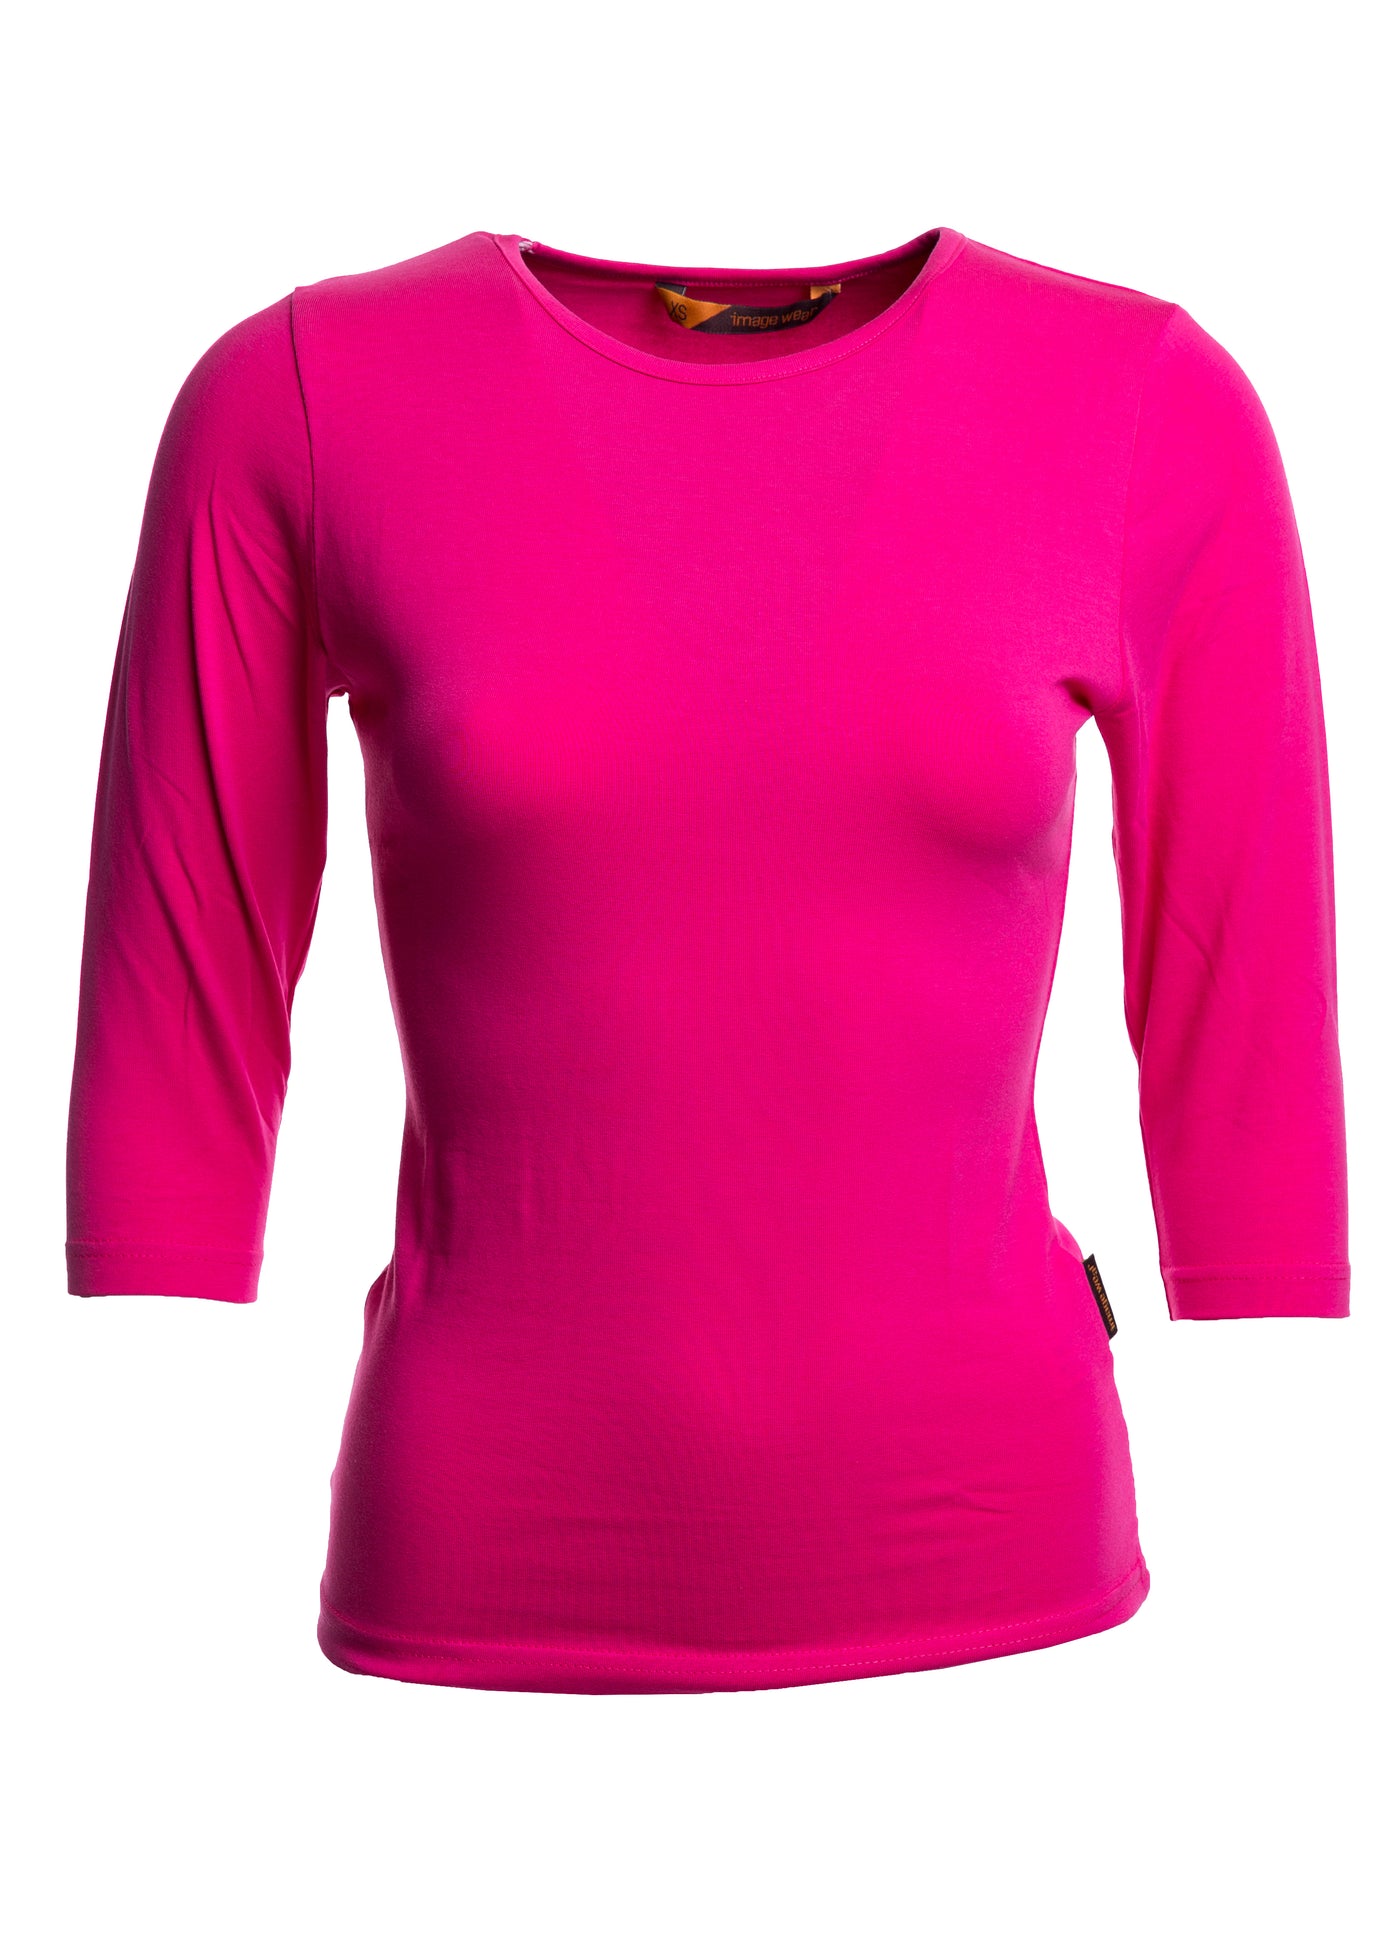 Naisten tyköistuva paita 3/4 -hihoilla ja O-pääntiellä. Aavistuksen vartalonmyötäinen malli.